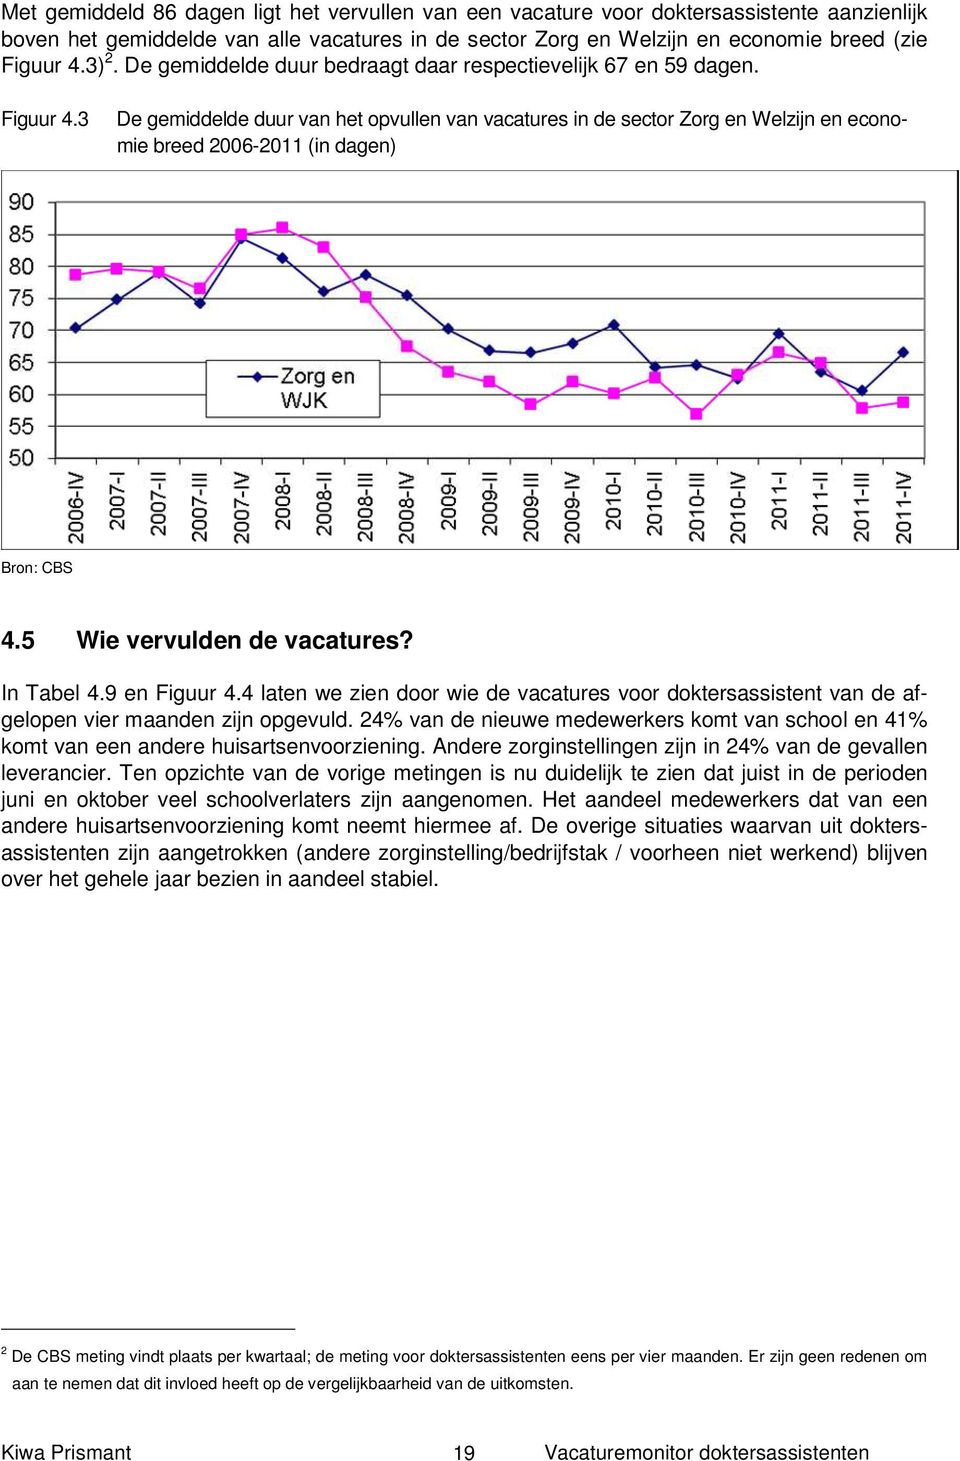 3 De gemiddelde duur van het opvullen van vacatures in de sector Zorg en Welzijn en economie breed 2006-2011 (in dagen) Bron: CBS 4.5 Wie vervulden de vacatures? In Tabel 4.9 en Figuur 4.